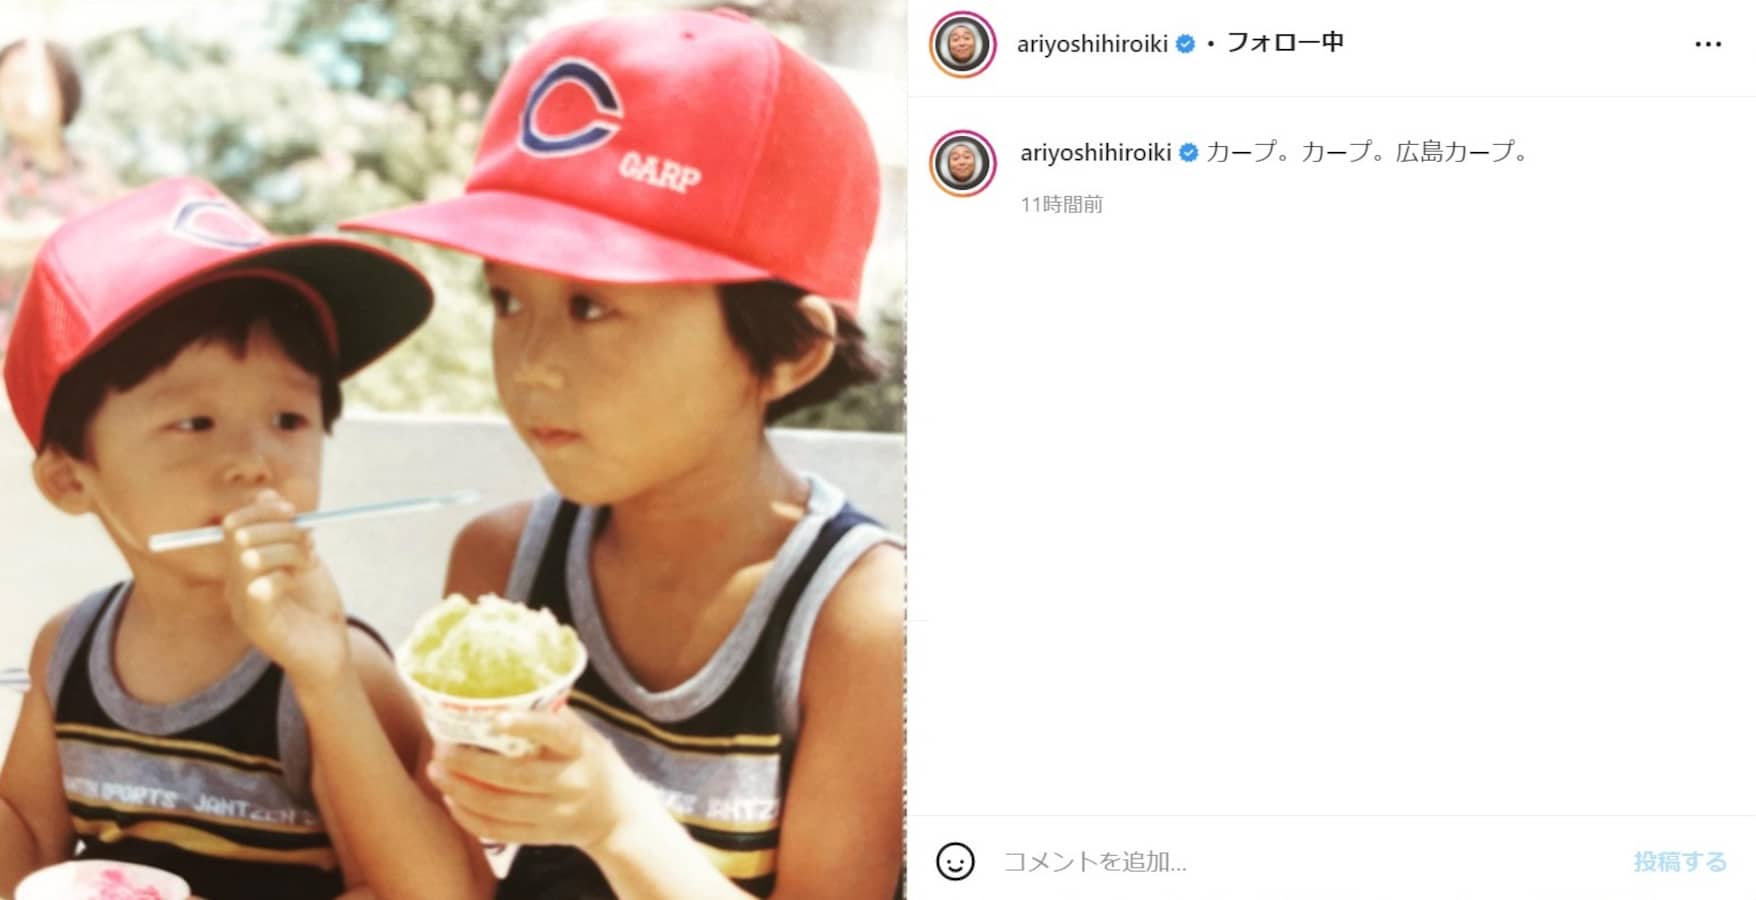 可愛いかよ 有吉弘行 広島カープの帽子をかぶった幼少期の写真披露で 面影ありますね と反響 All About News